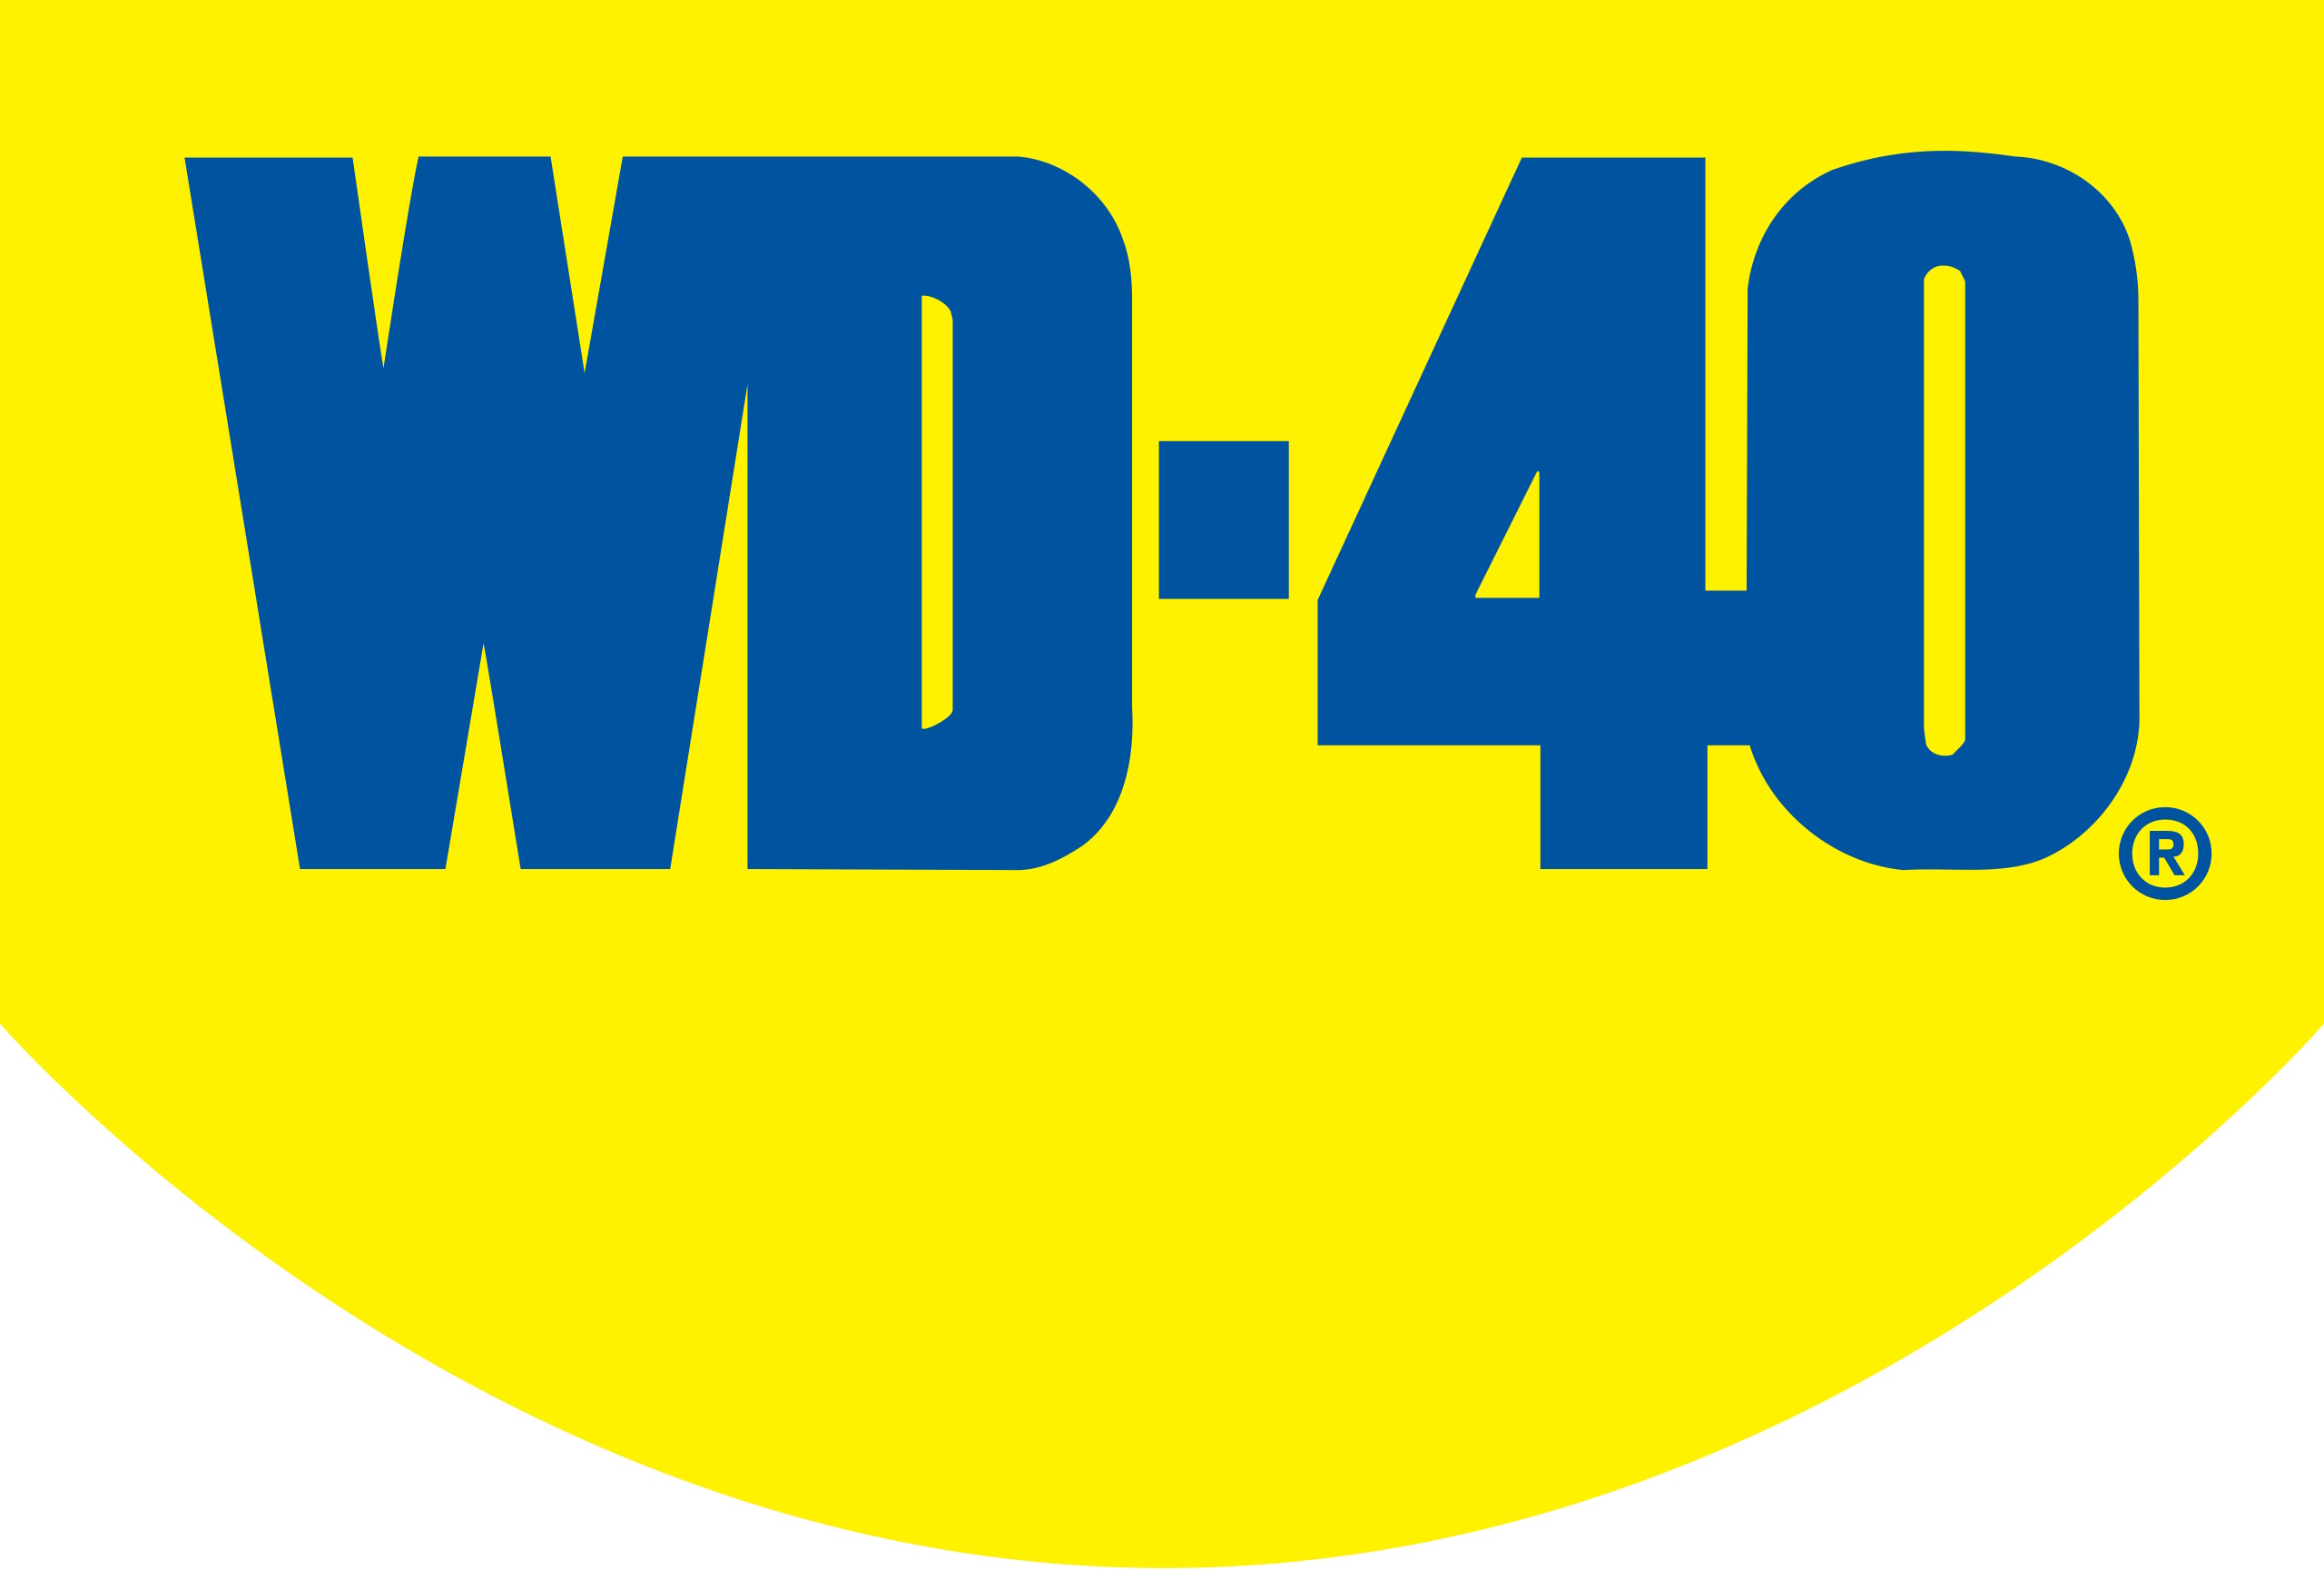 WD-40 Company